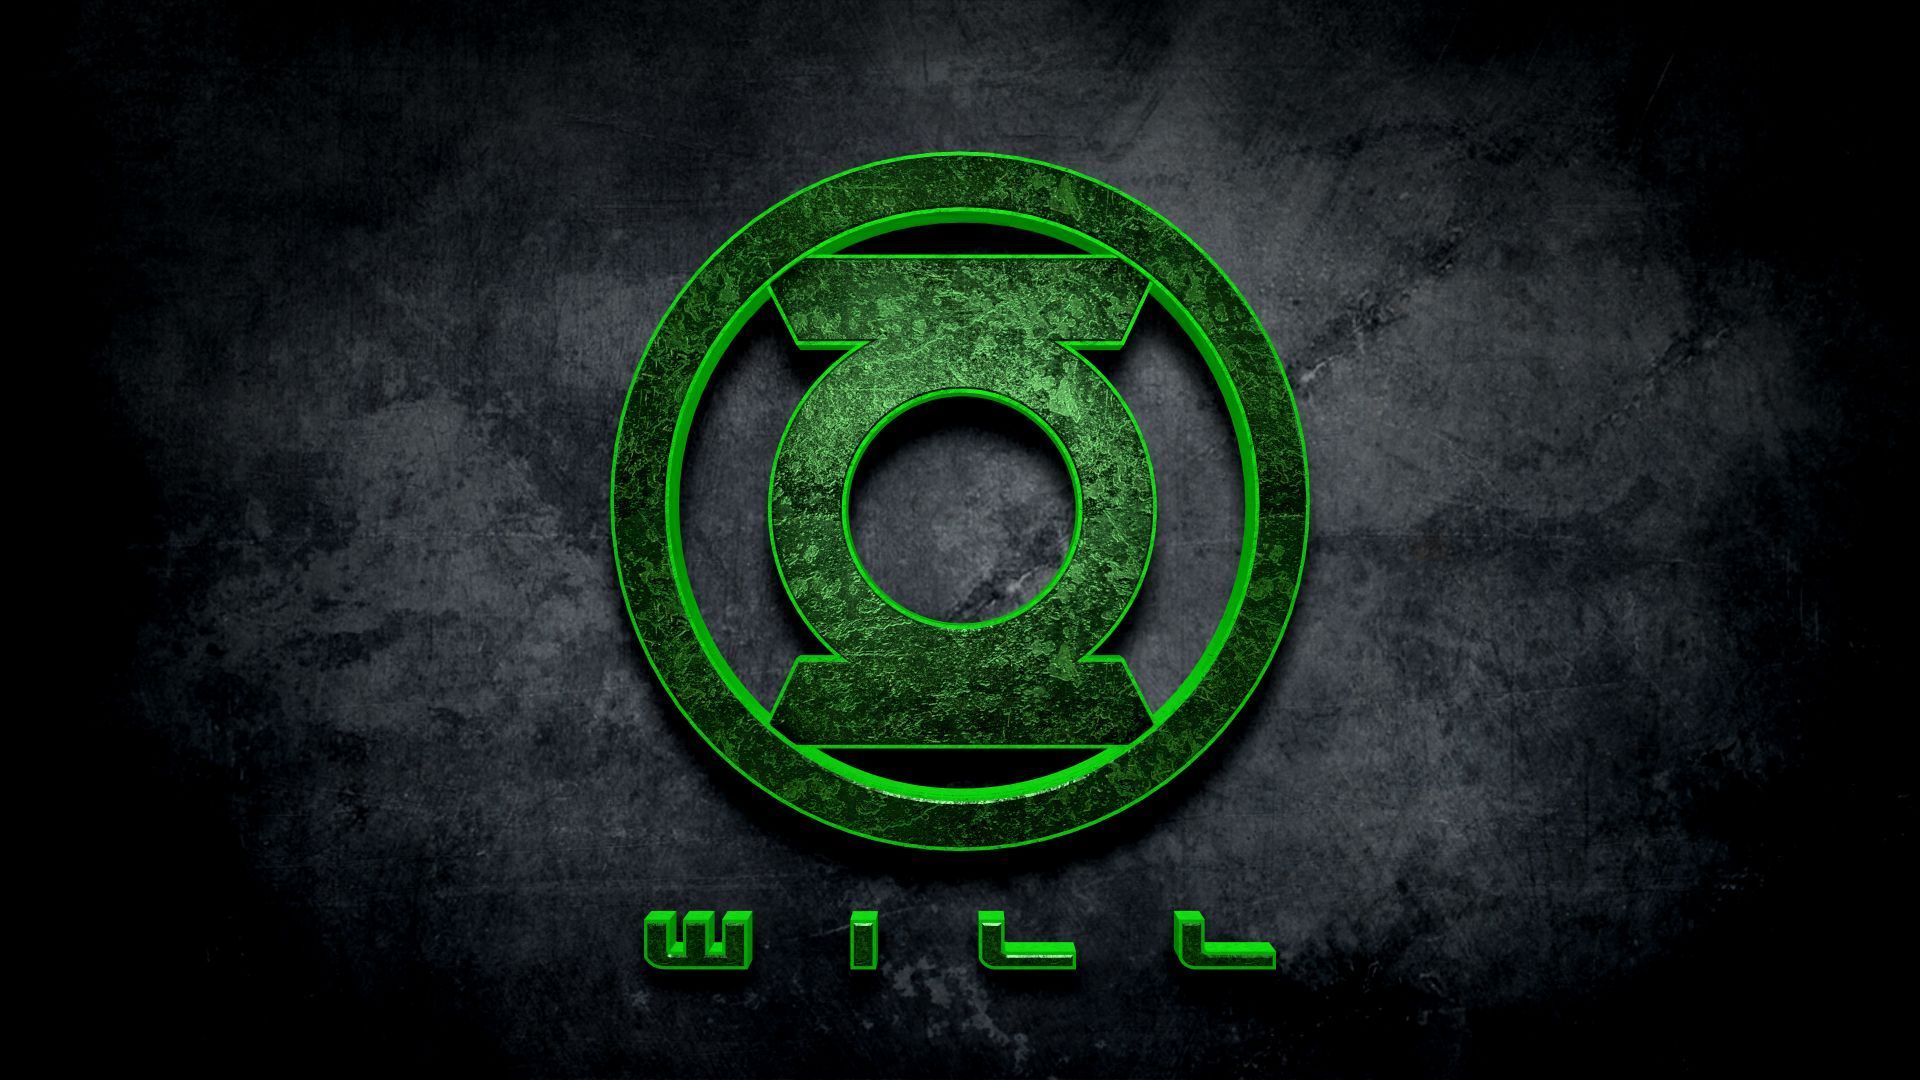 Green Lantern Symbol Wallpaper Free Green Lantern Symbol Background